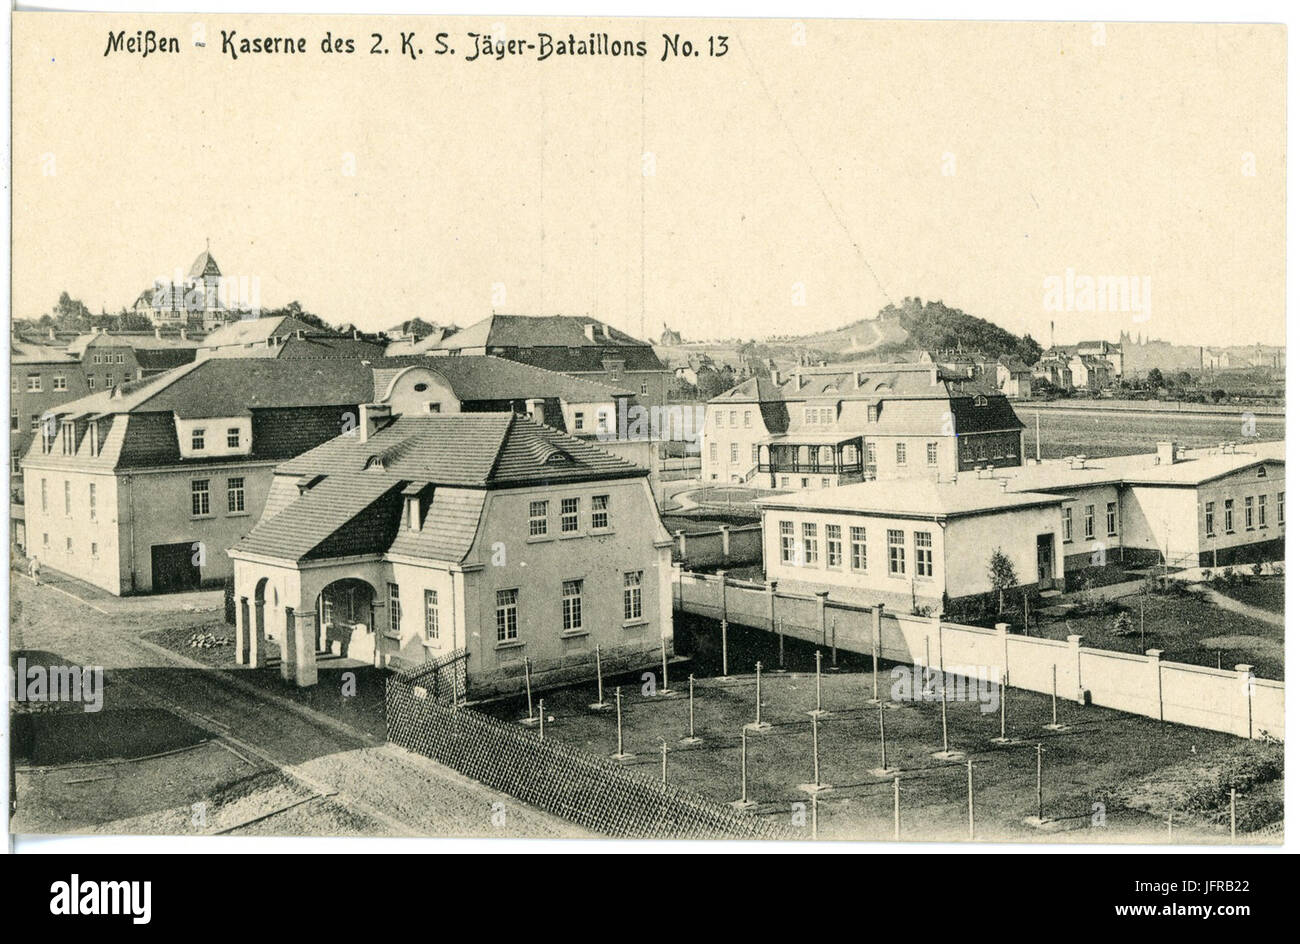 18363-Meißen-1914-Kaserne des 2. Königlich Sächsischen Jäger-Bataillon Nr. 13-Brück & Sohn Kunstverlag Stock Photo